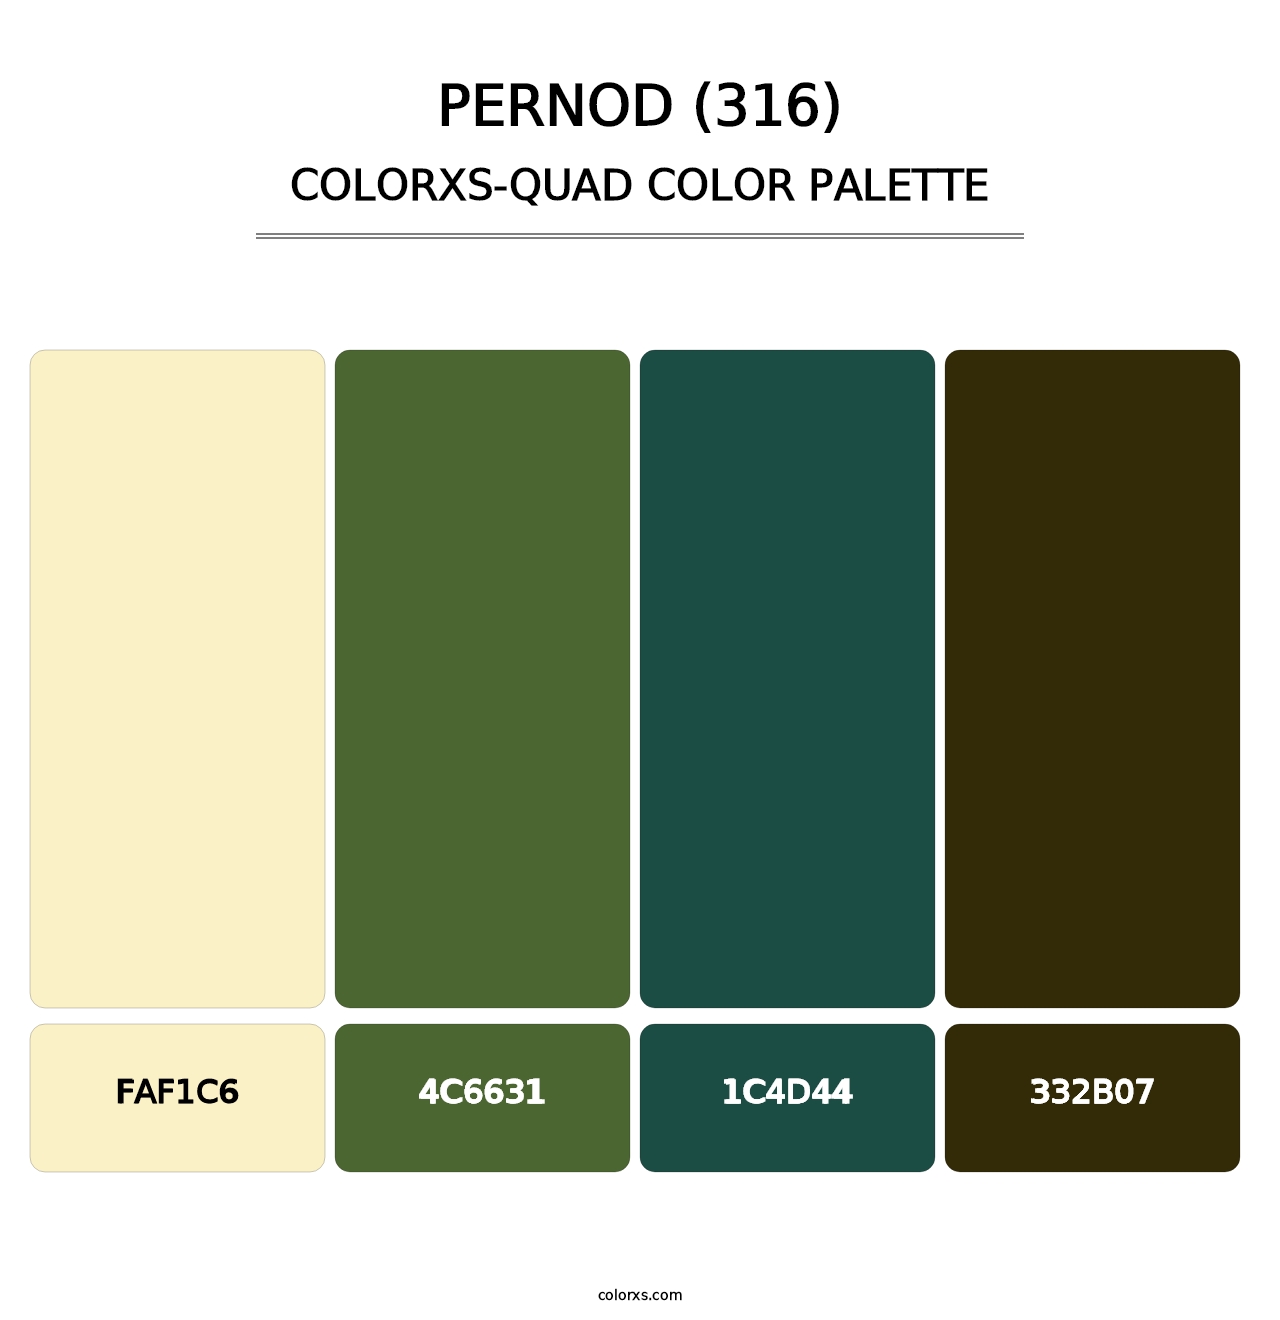 Pernod (316) - Colorxs Quad Palette